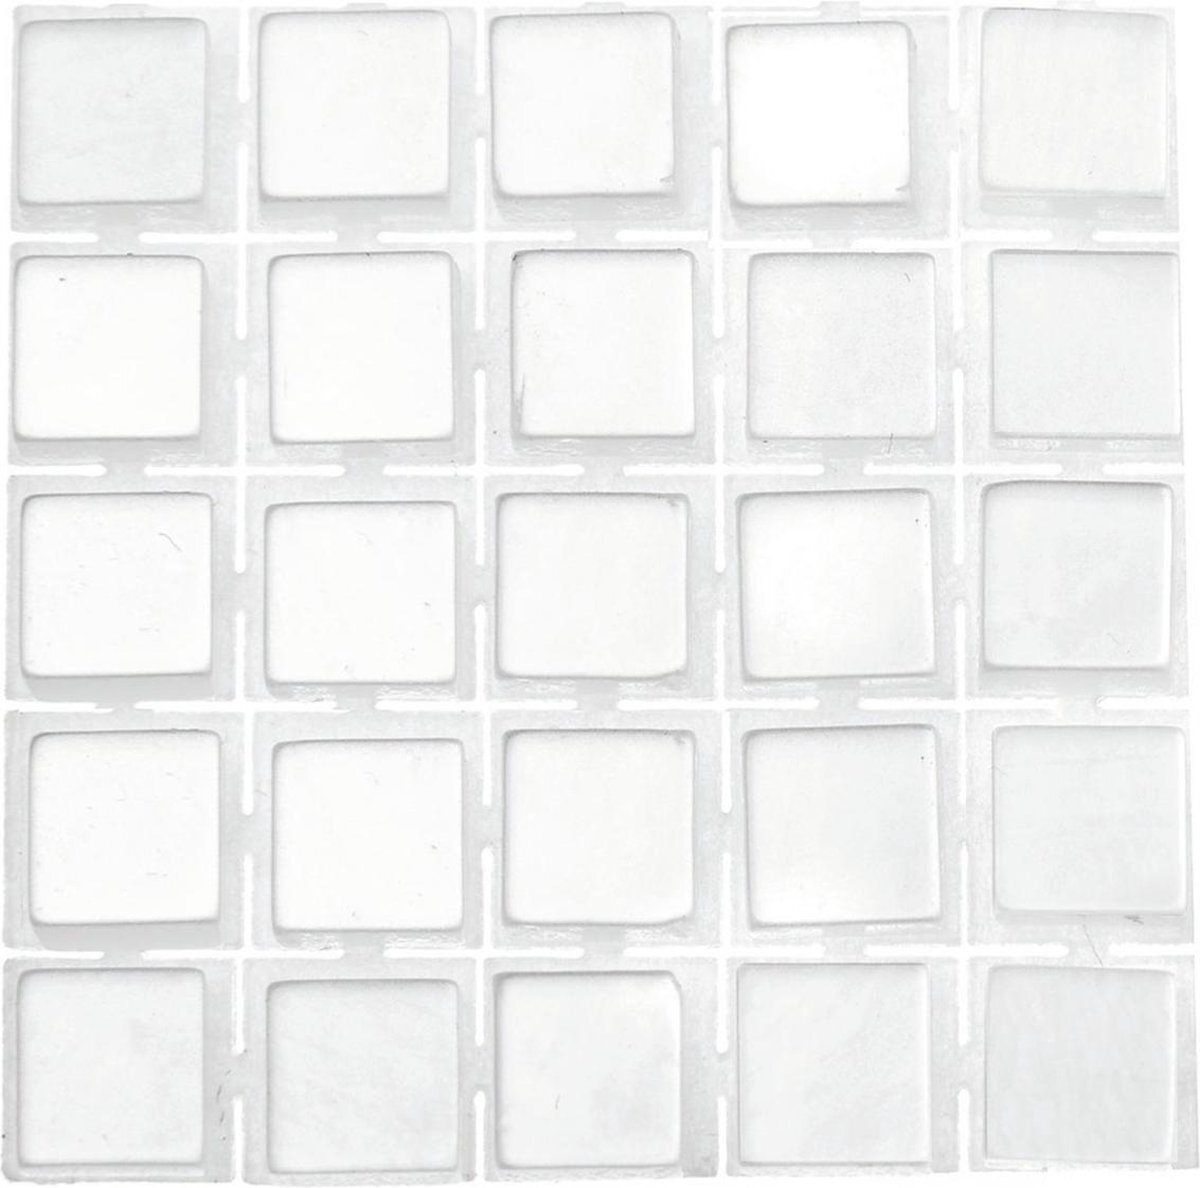 Glorex Hobby 119x stuks mozaieken maken steentjes/tegels kleur wit met formaat 5 x 5 x 2 mm